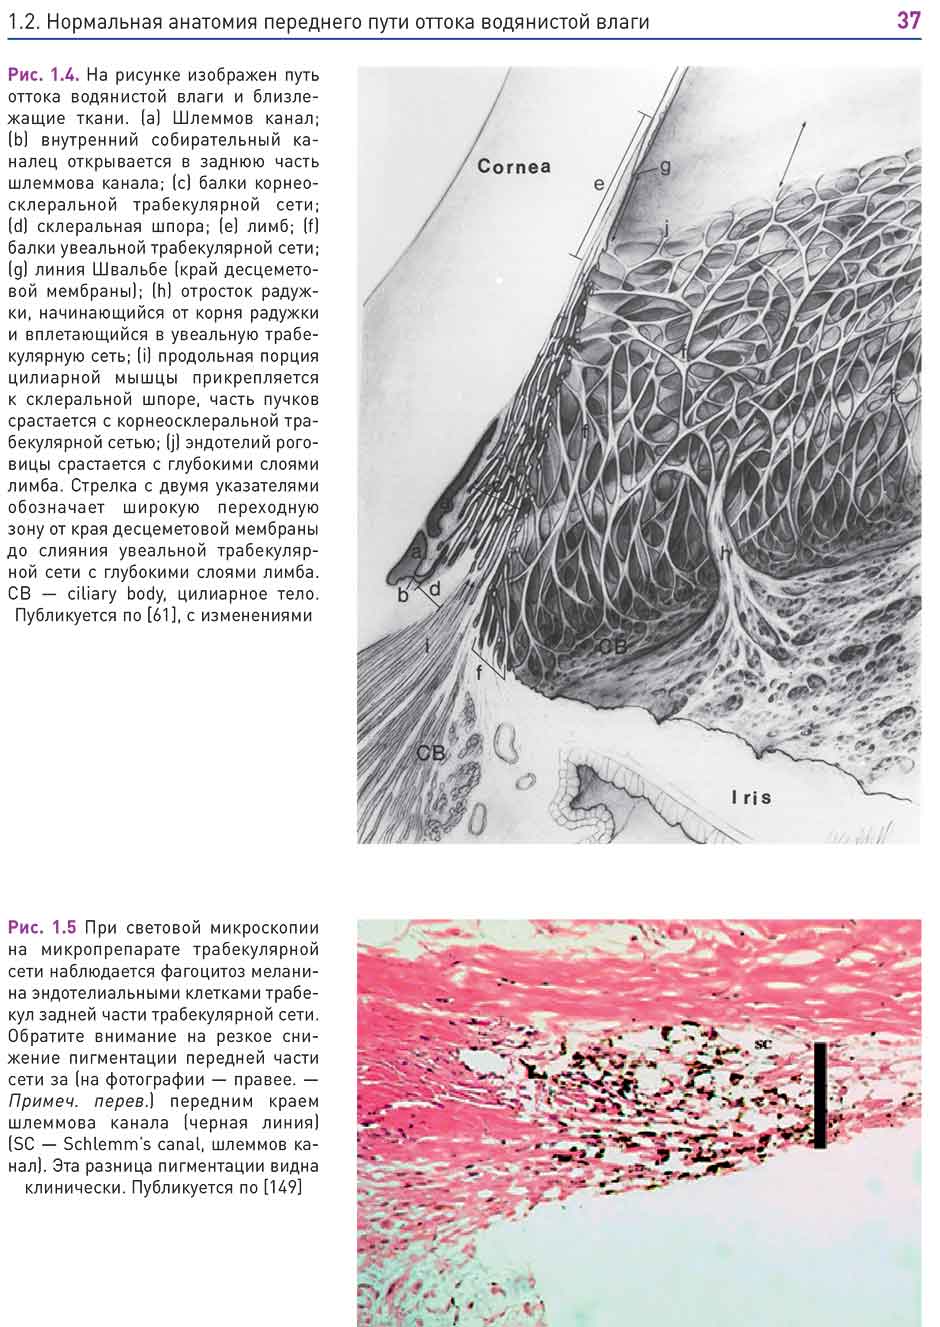 Рис. 1.5 При световой микроскопии на микропрепарате трабекулярной сети наблюдается фагоцитоз 